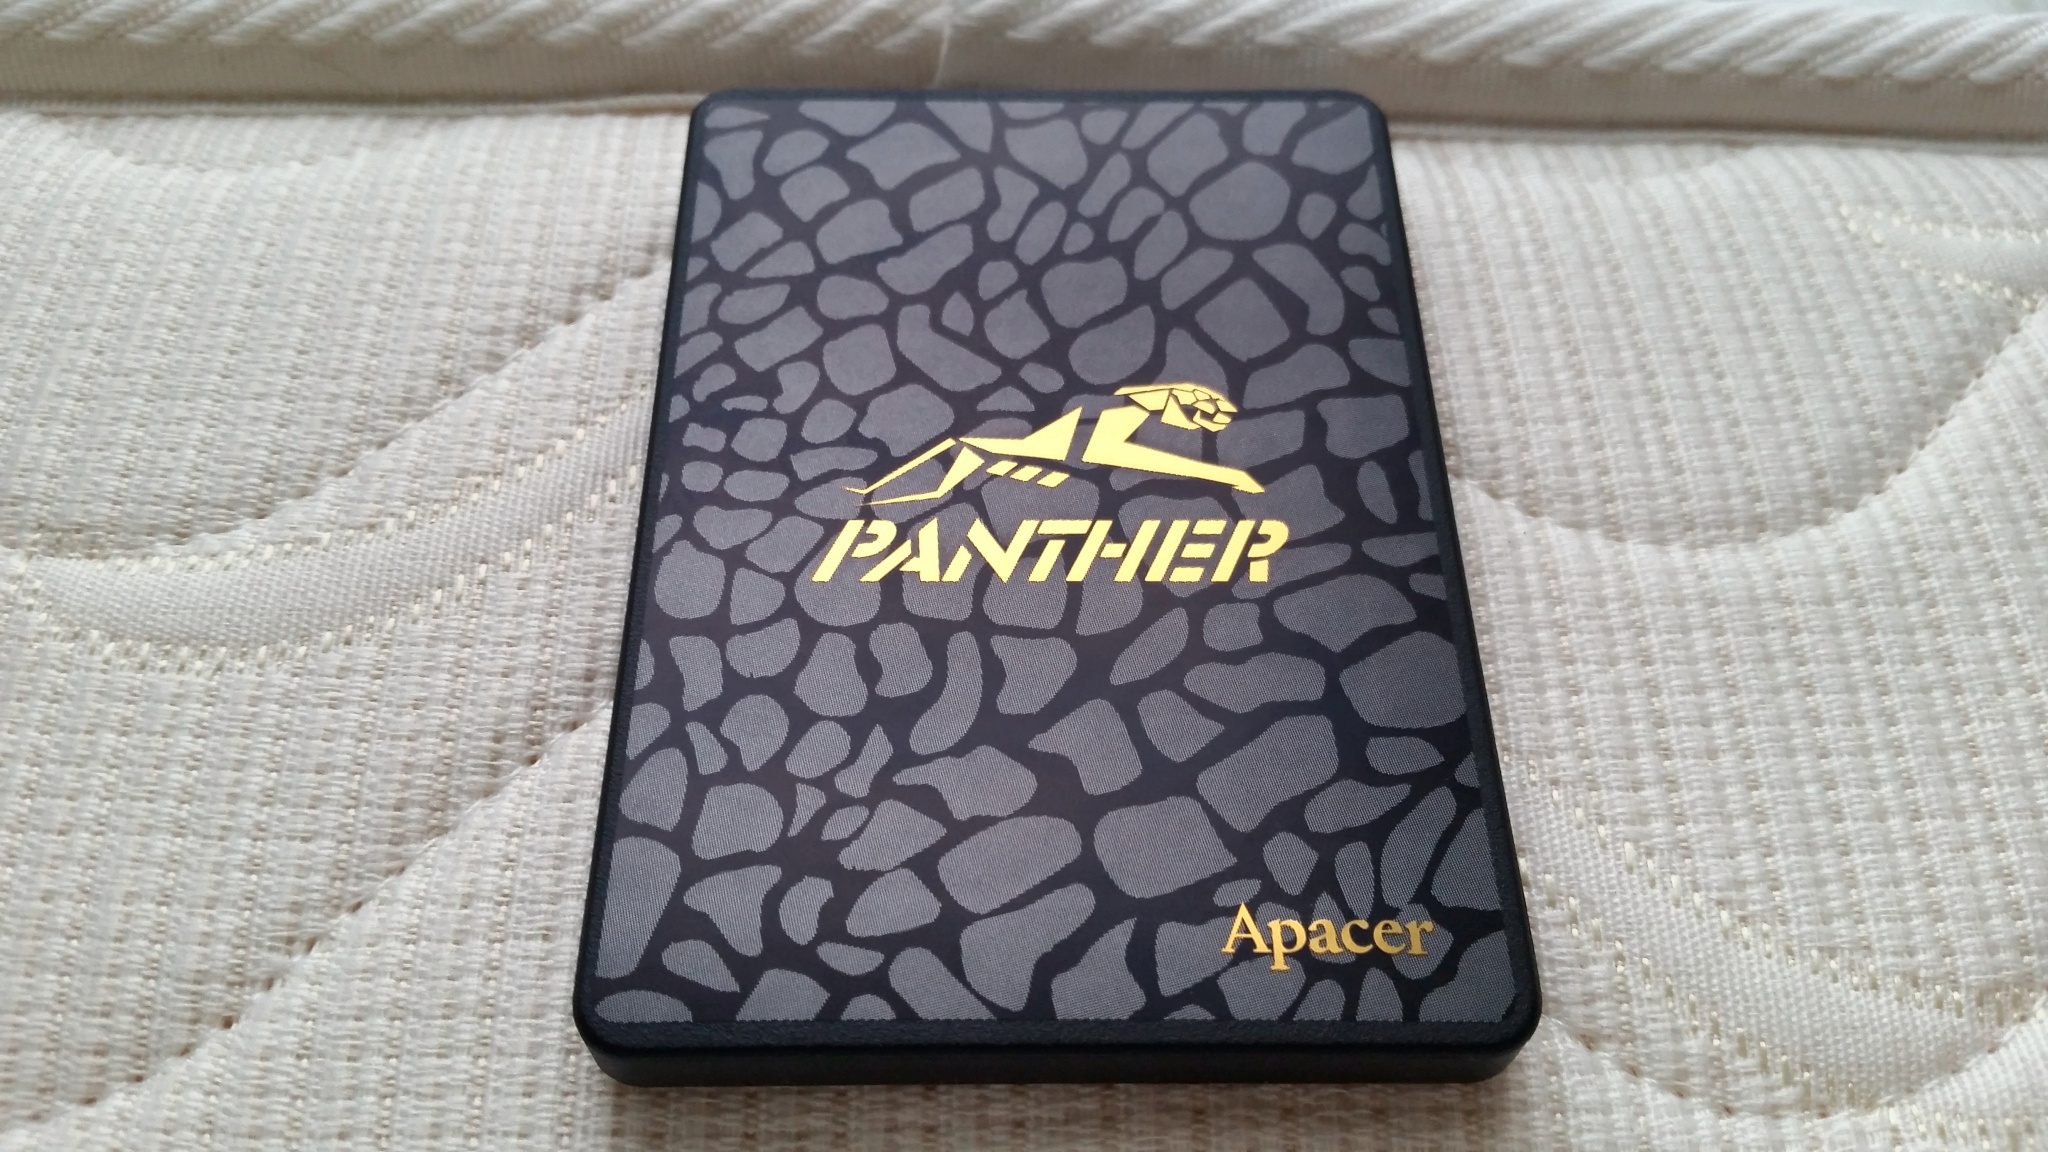 Ssd накопитель panther. Apacer as340 120gb. SSD накопитель 240 GB Apacer Panther as340 2.5 SATA III. Apacer as340 512. 240 ГБ 2.5" SATA накопитель Apacer as340 Panther.